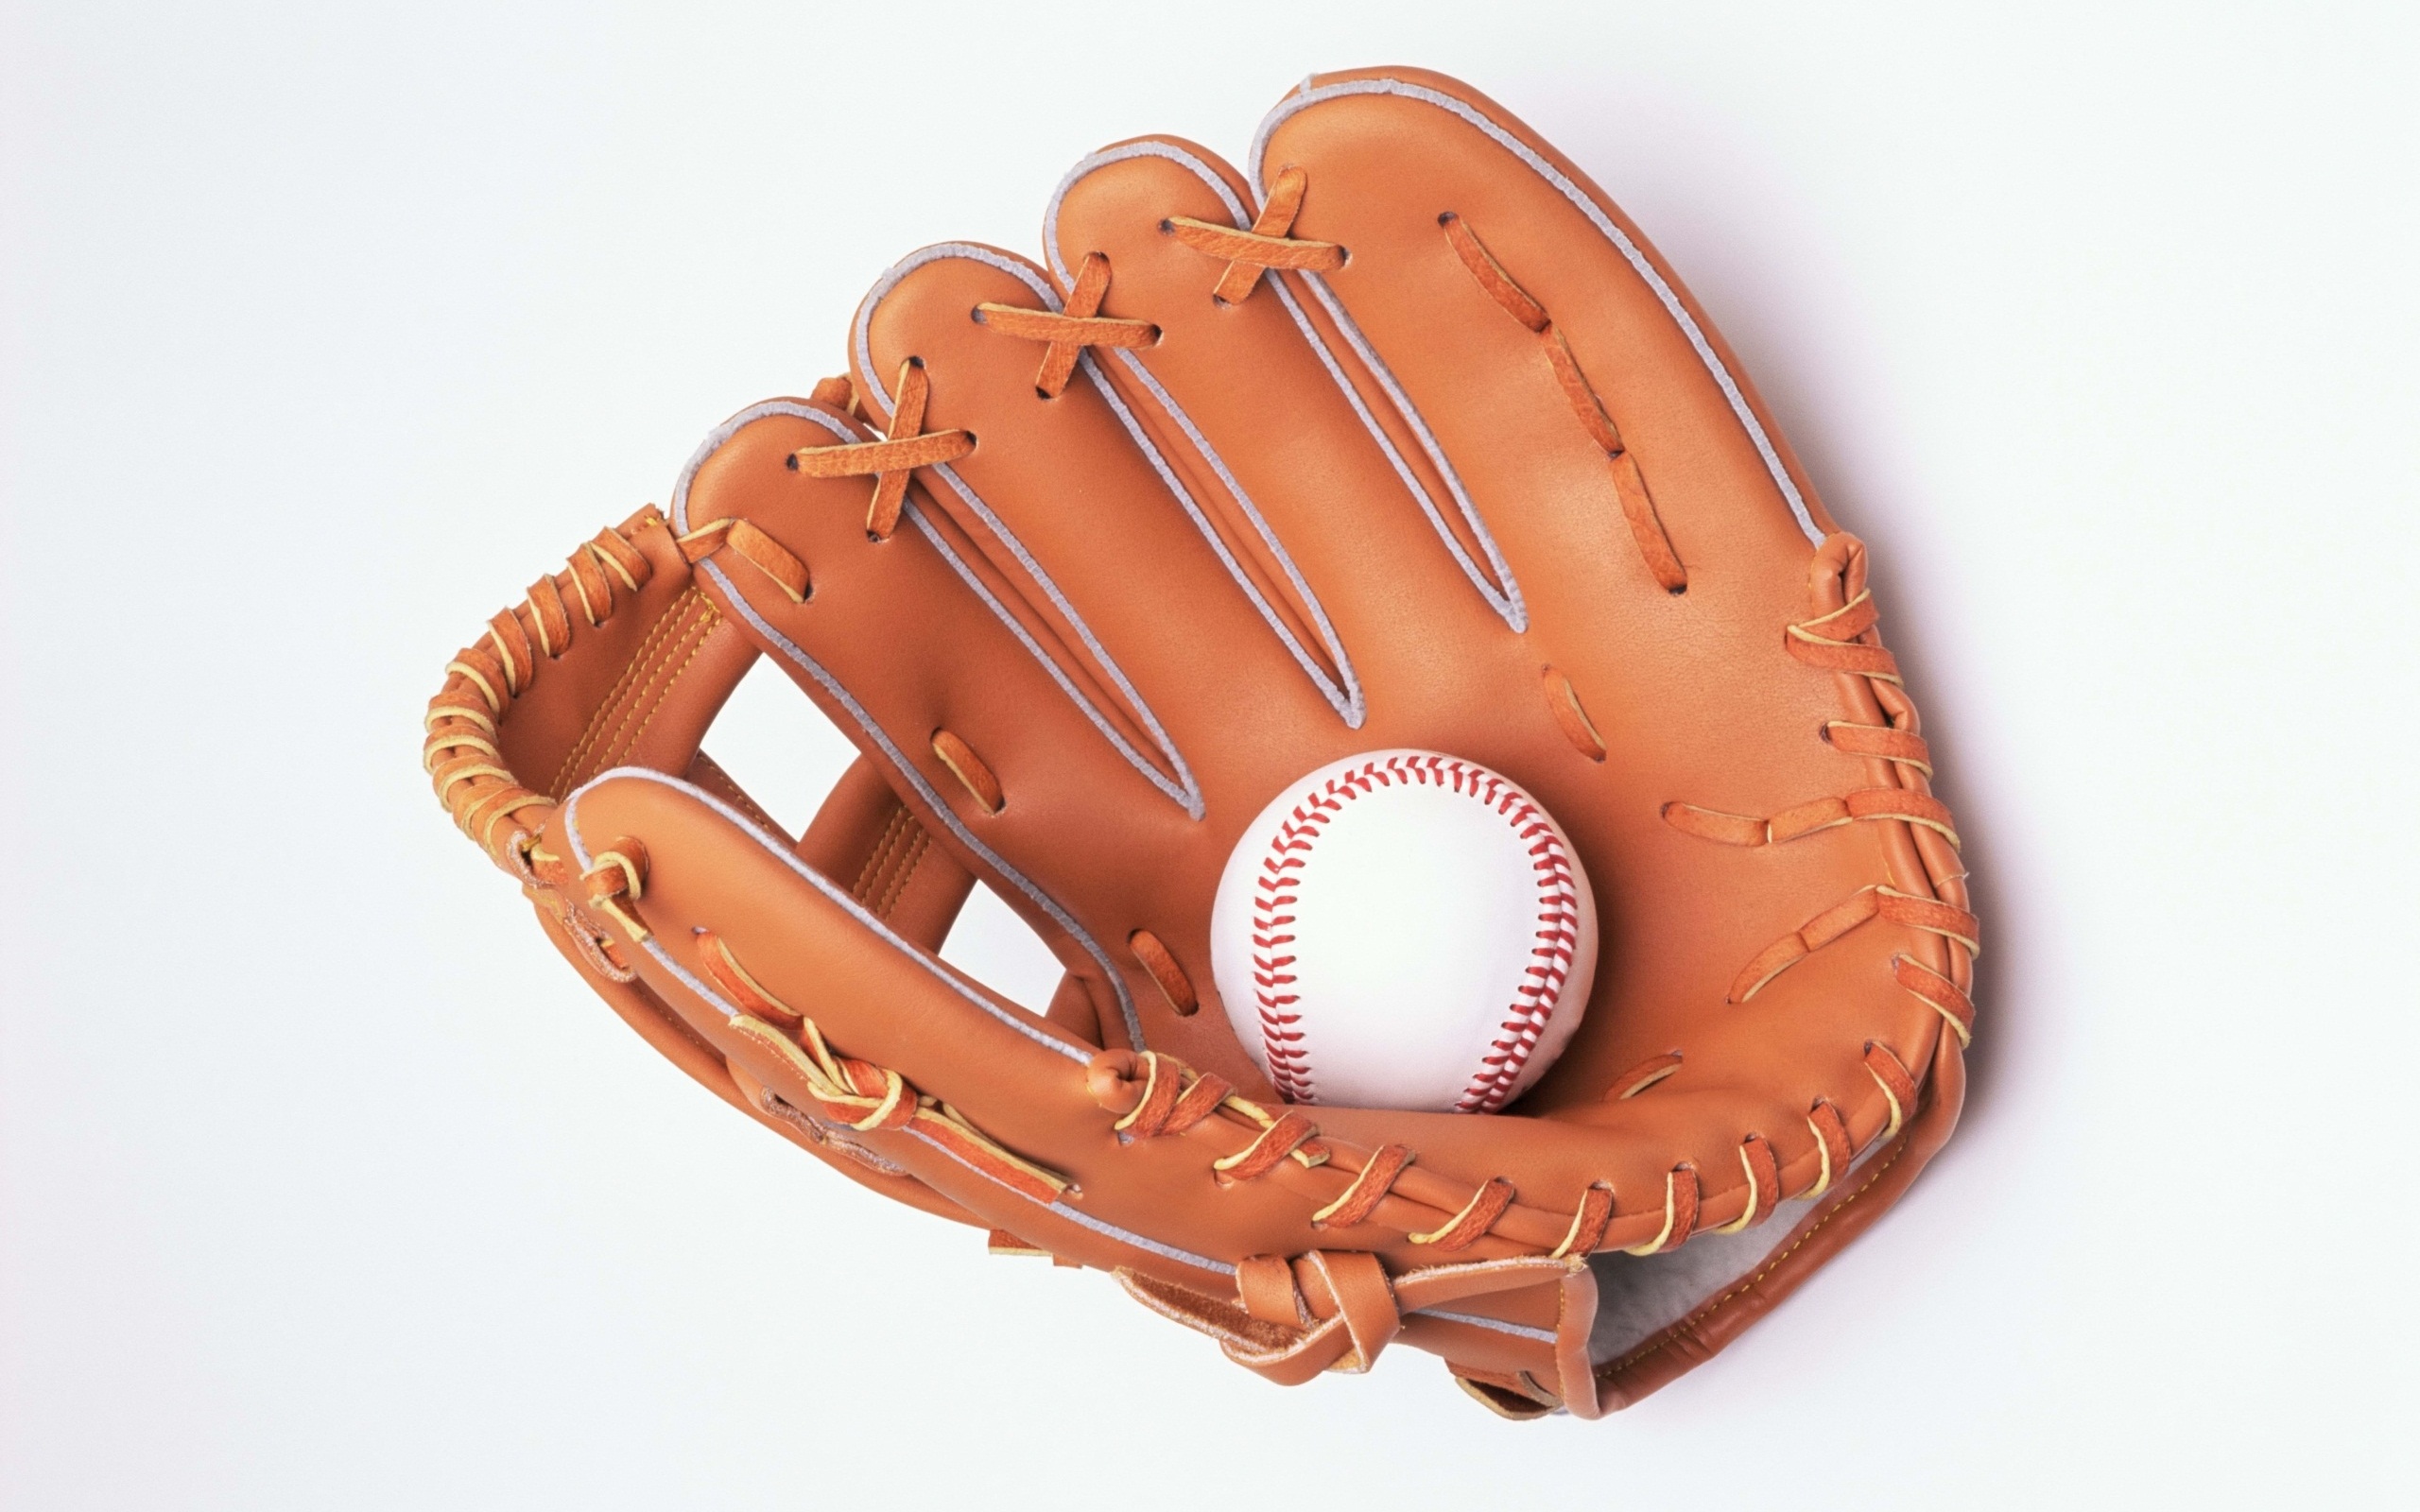 Baseball: Glove And Ball Fondos de pantalla, Fondos de escritorio ...